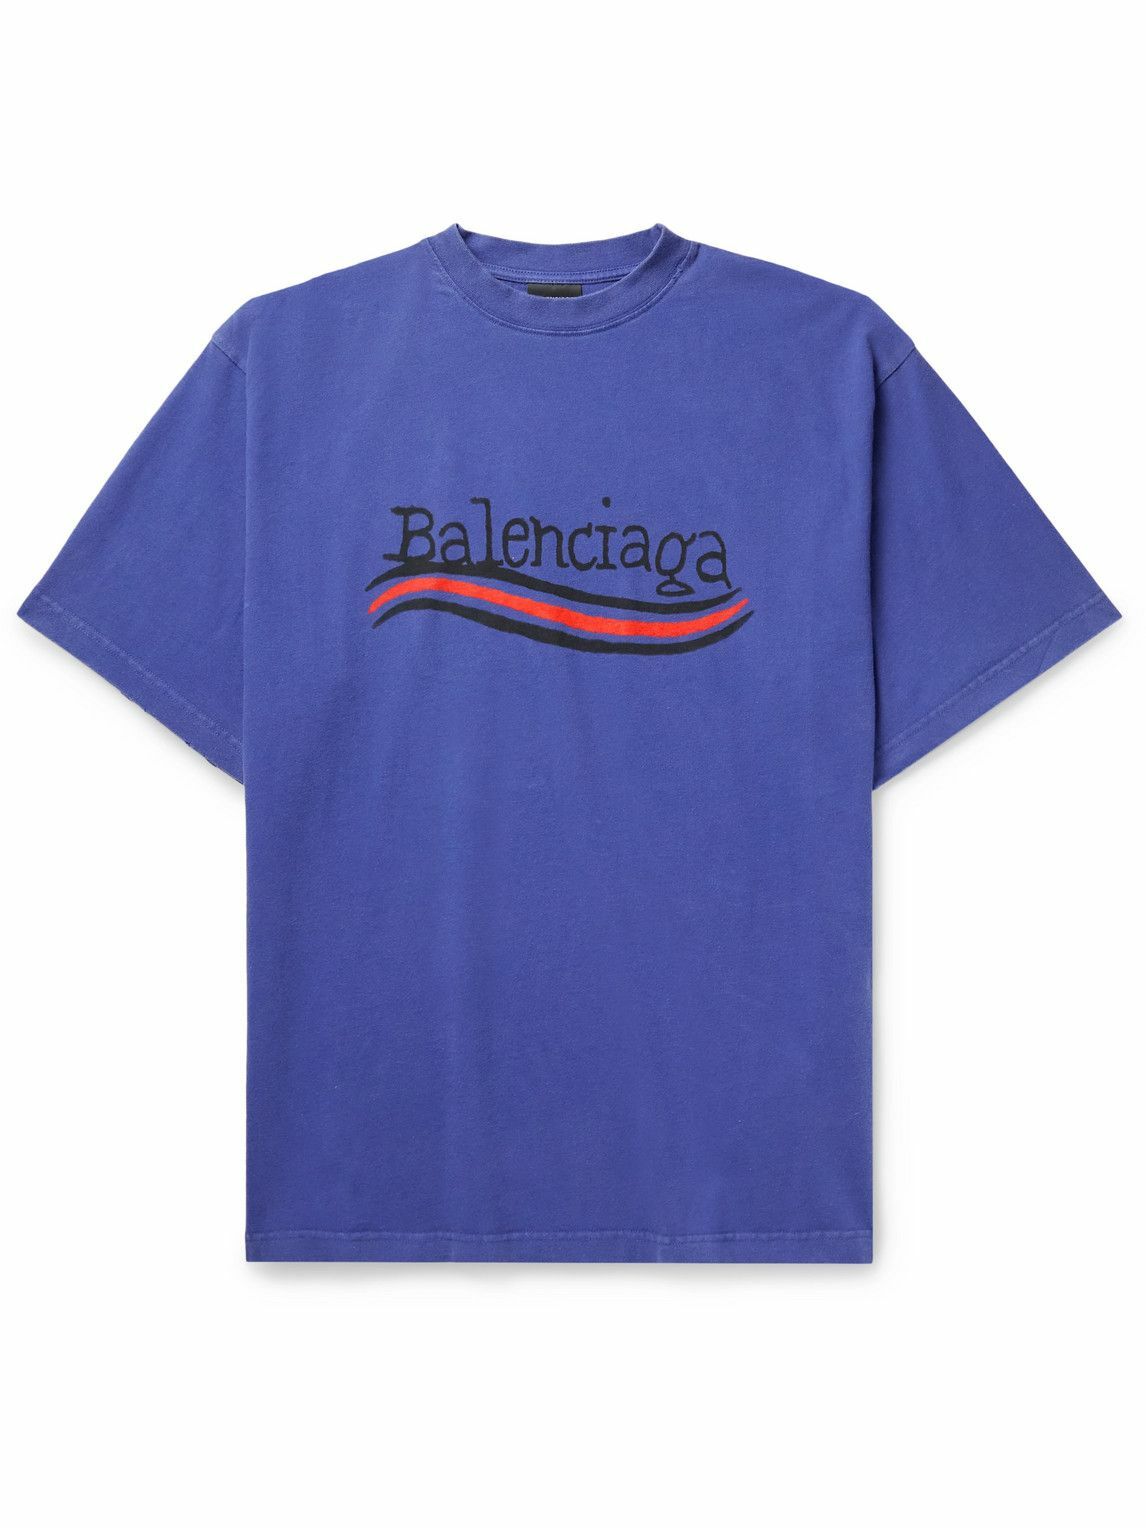 Balenciaga - Oversized Logo-Print Cotton-Jersey T-Shirt - Blue Balenciaga